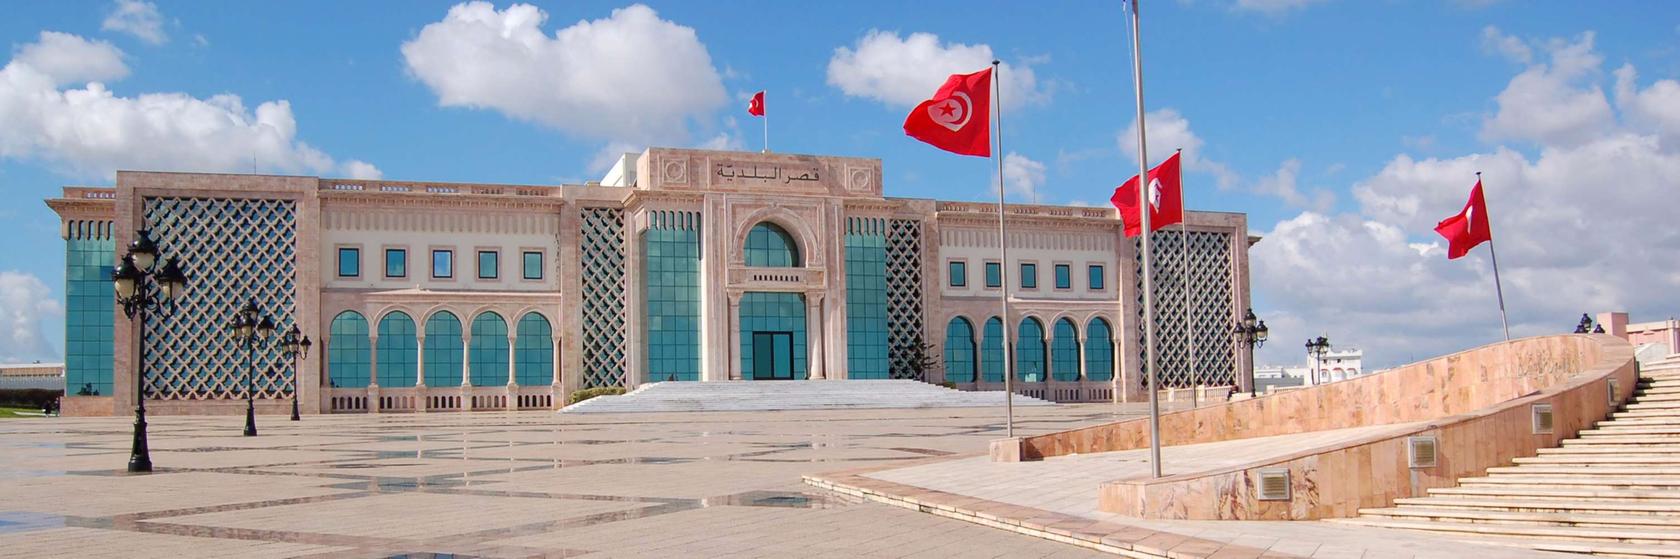 Místa v Tunisu a okolí, které musíte navštívit